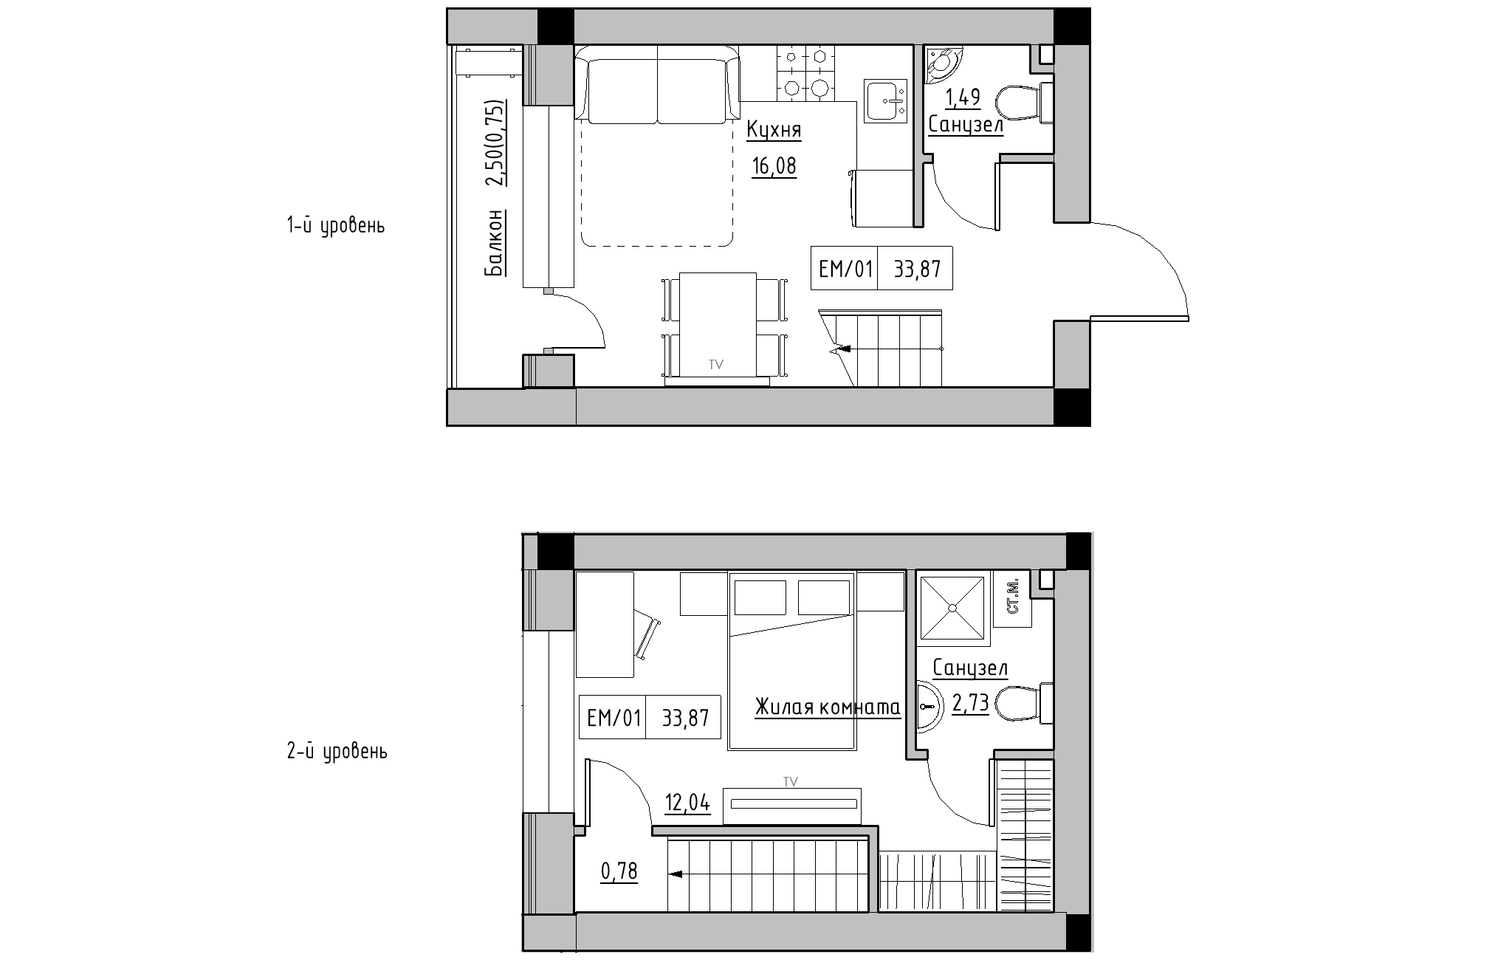 Planning 2-lvl flats area 33.87m2, KS-013-05/0005.